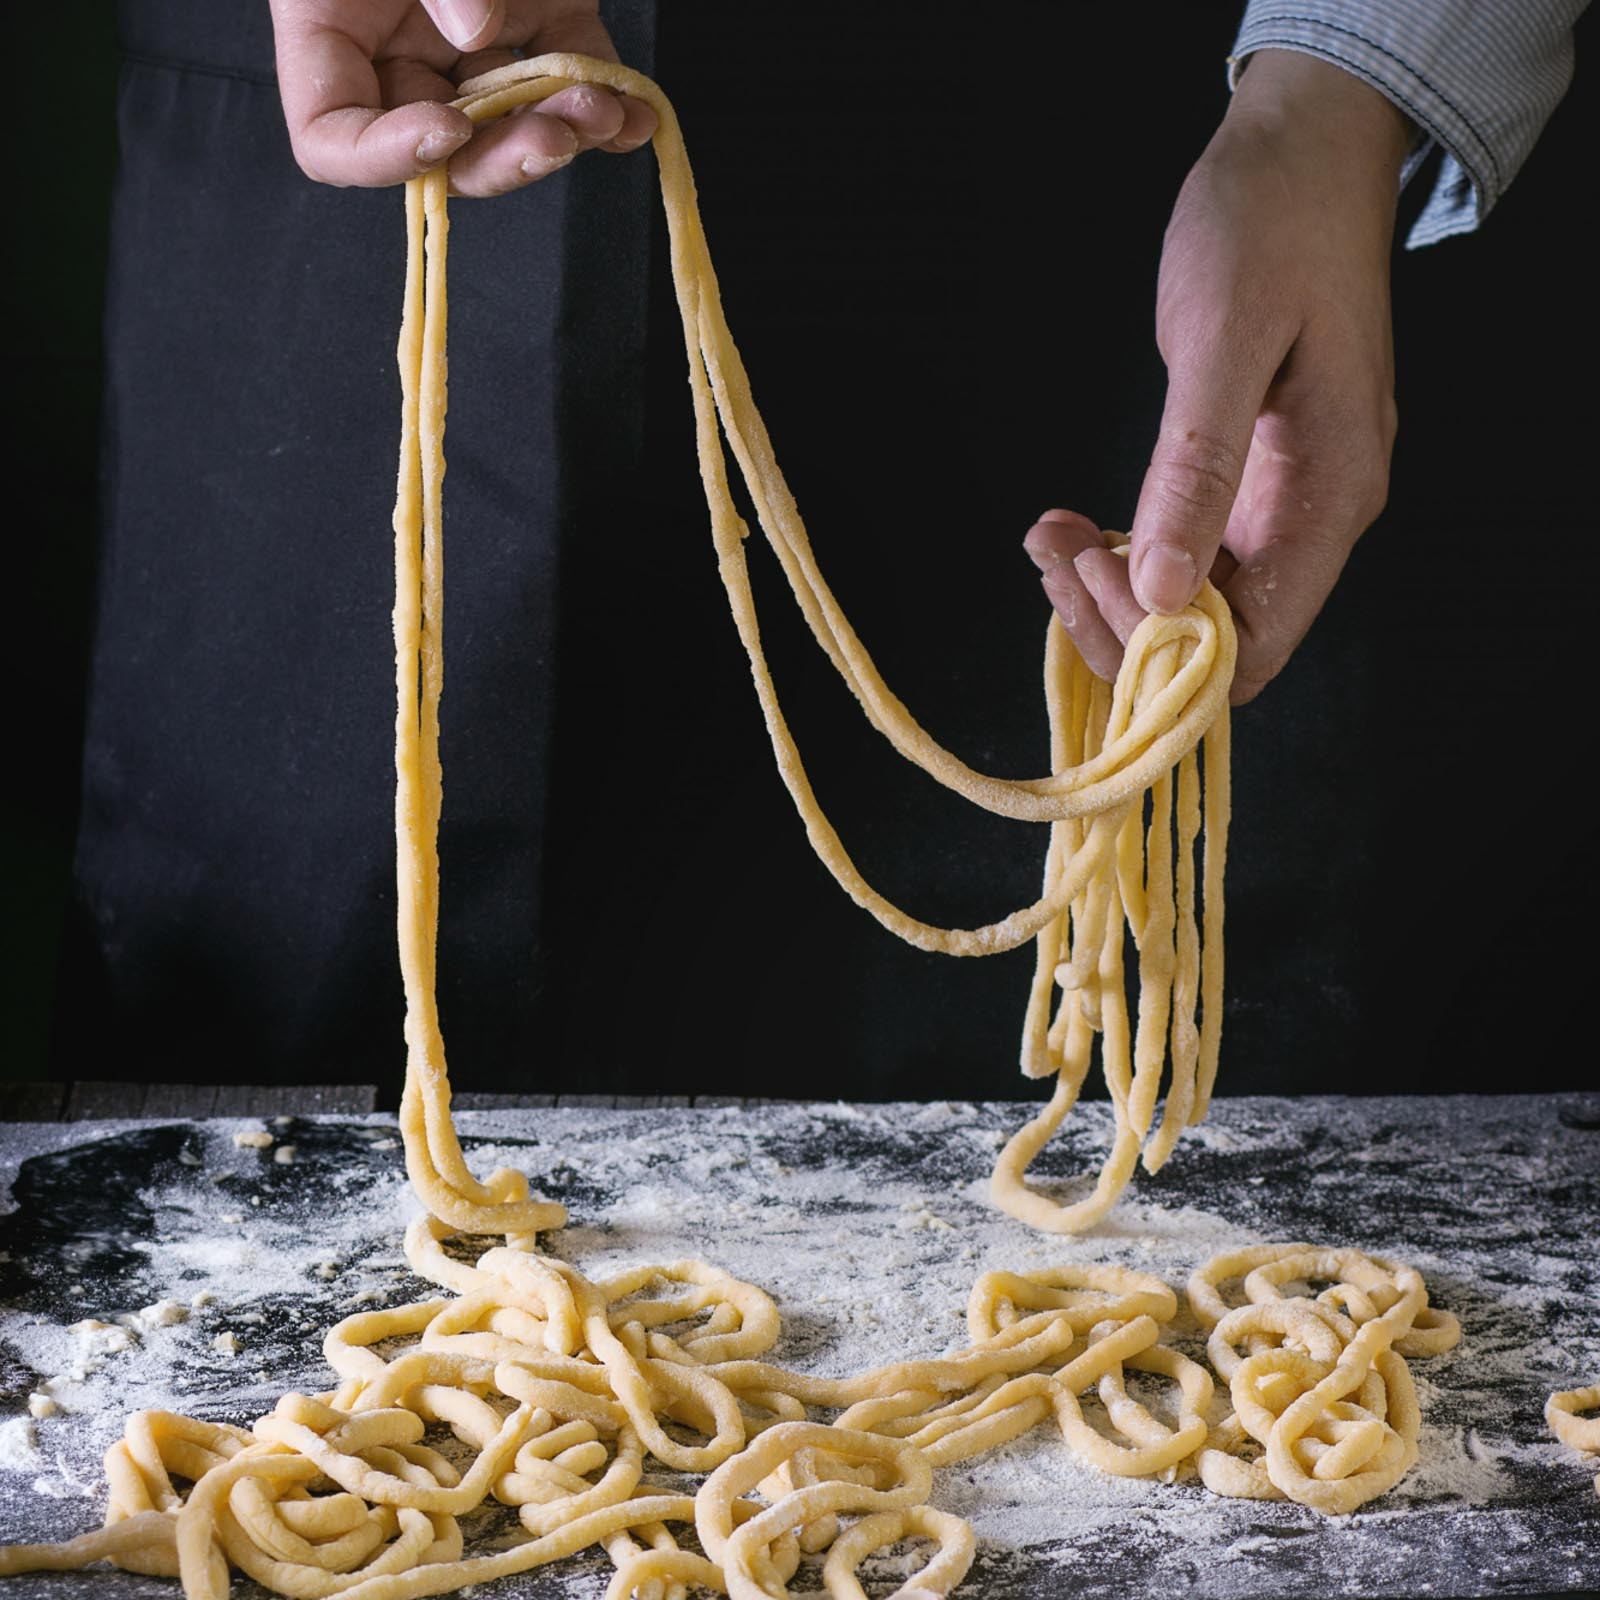 I pici sono una pasta simile agli spaghetti  della cucina tradizionale contadina  Toscana .Realizzati solo con farina di grano tenero , acqua, sale. Con il sugo all' aglione della chiana sono un piatto tipico aretino. Questi sono realizzati a mano come li facevano i nostri nonni